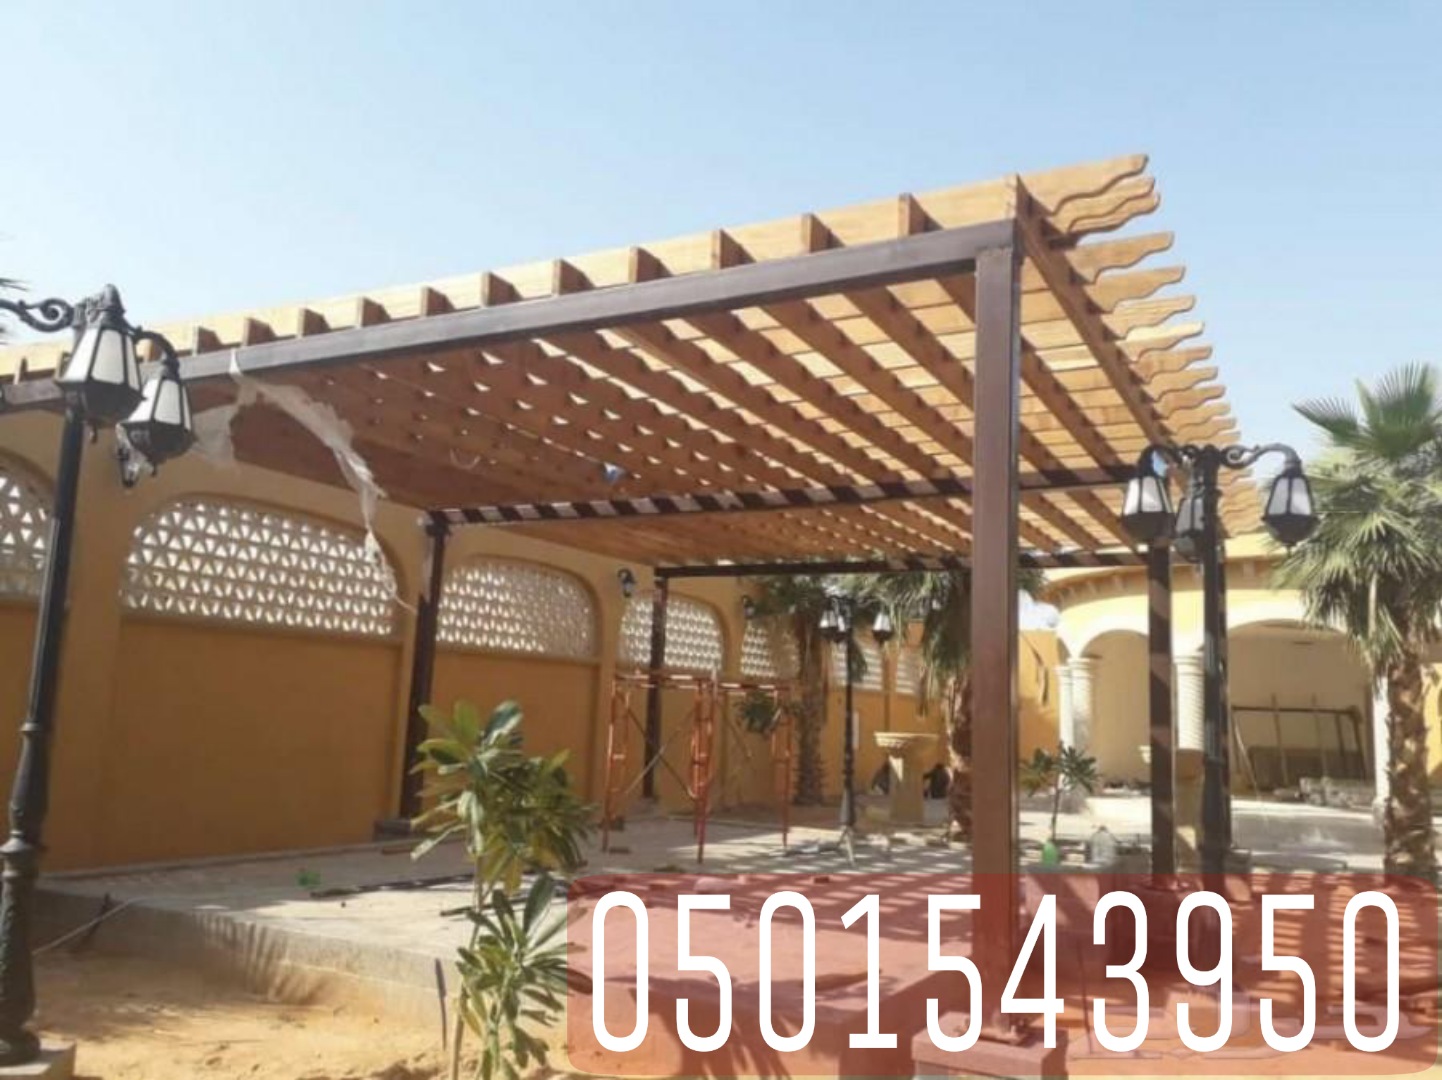 تركيب جلسات حدائق للمنازل بتصاميم انيقة في جدة , 0501543950 P_2151u1m2v9